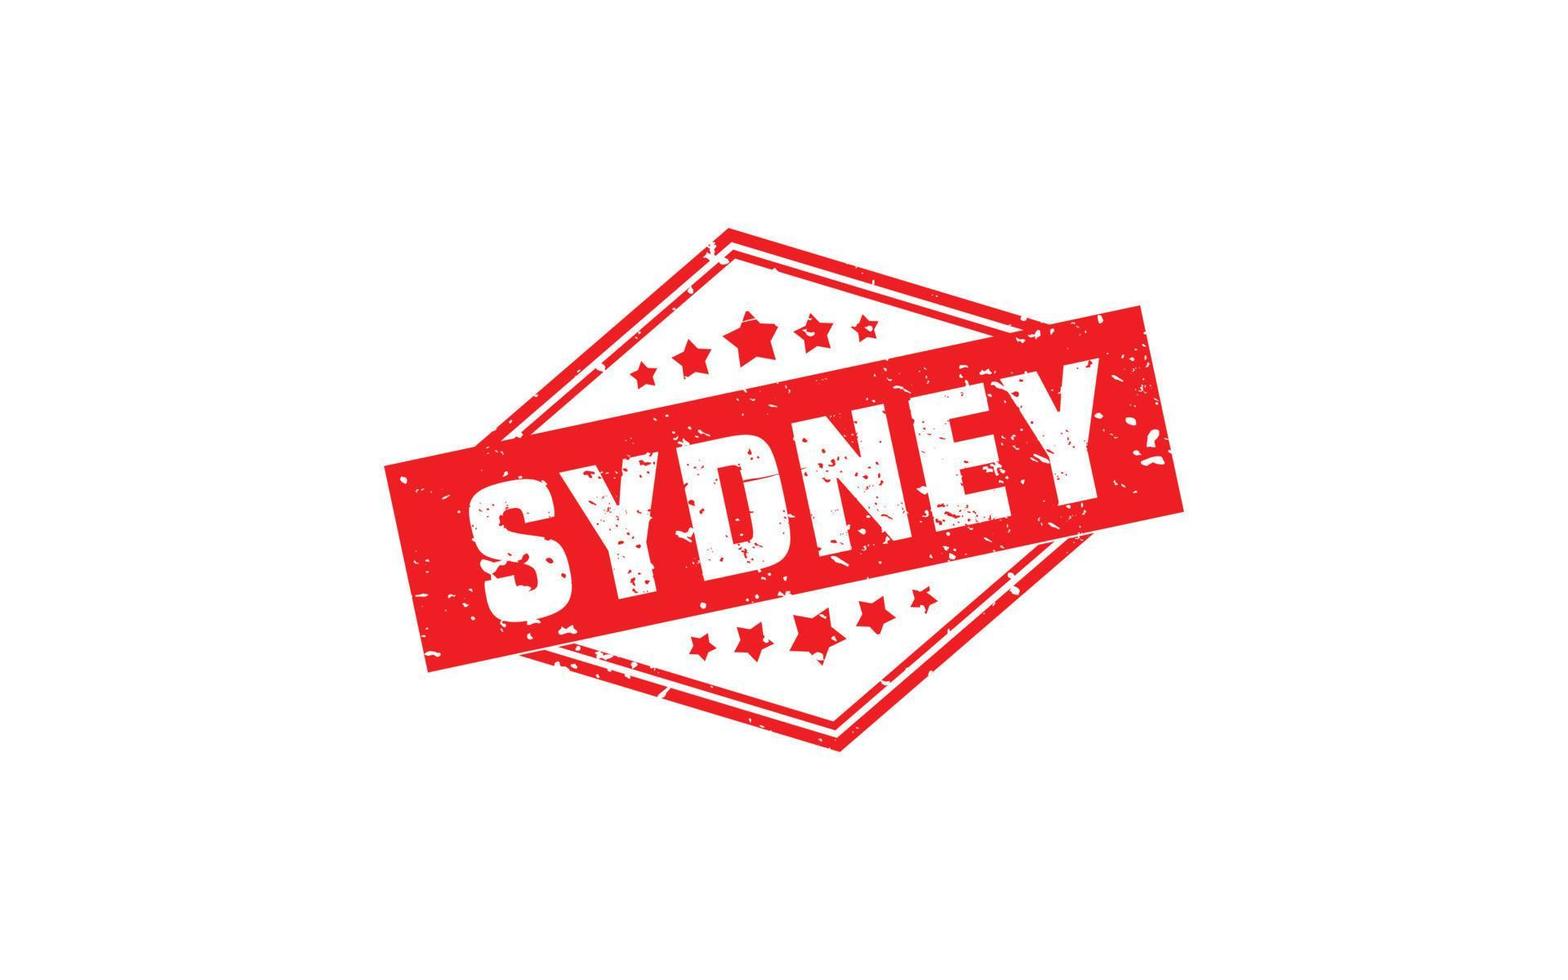 Sydney-Australien-Stempel mit Grunge-Stil auf weißem Hintergrund vektor